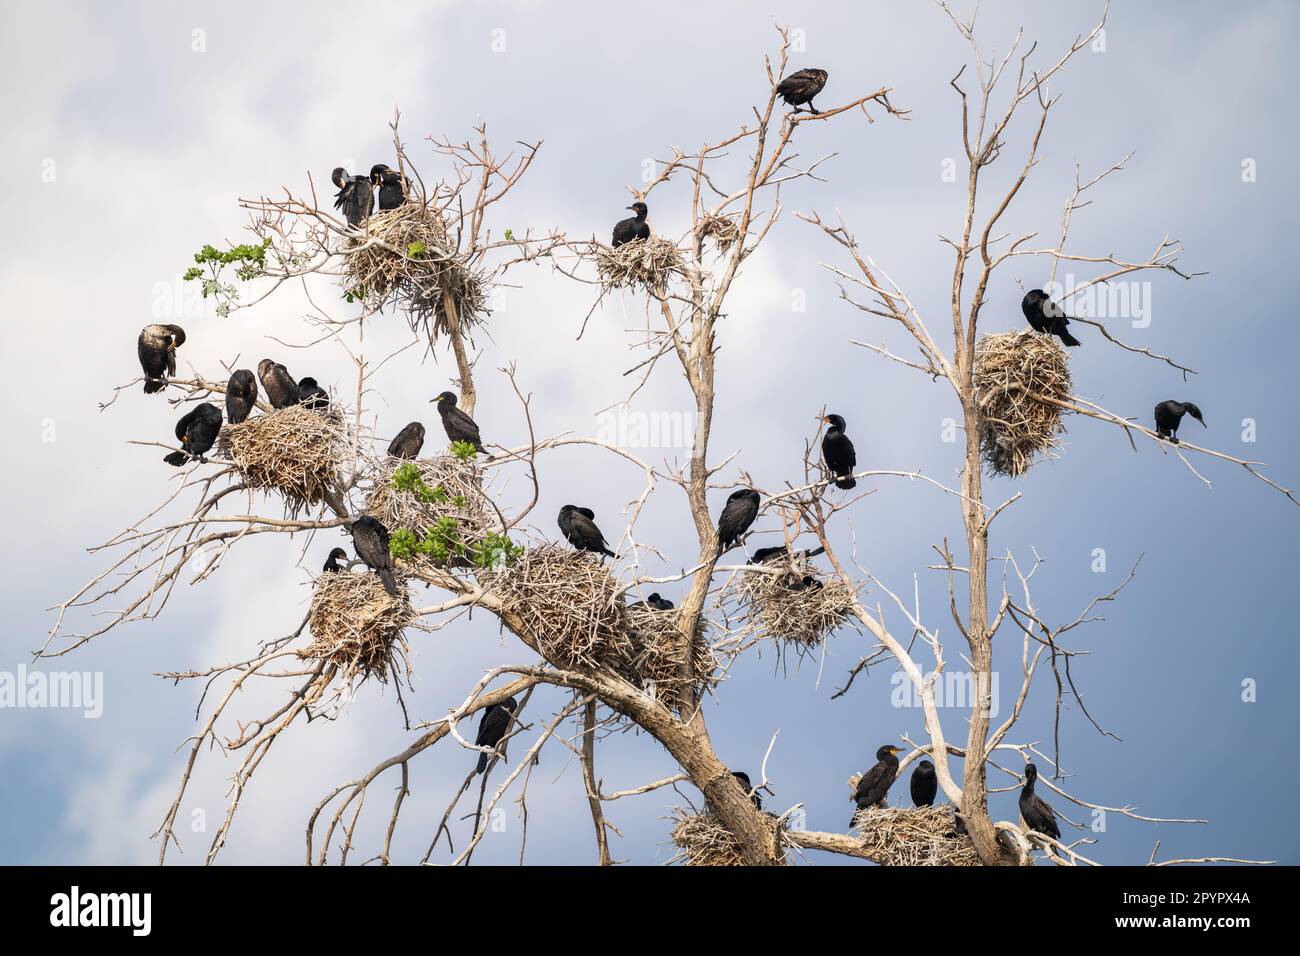 Pájaros cormoranes de doble cresta anidan en un alto pega, o árbol muerto, con nidos dispersos por todo el mundo contra un cielo azul claro con nubes. Foto de stock